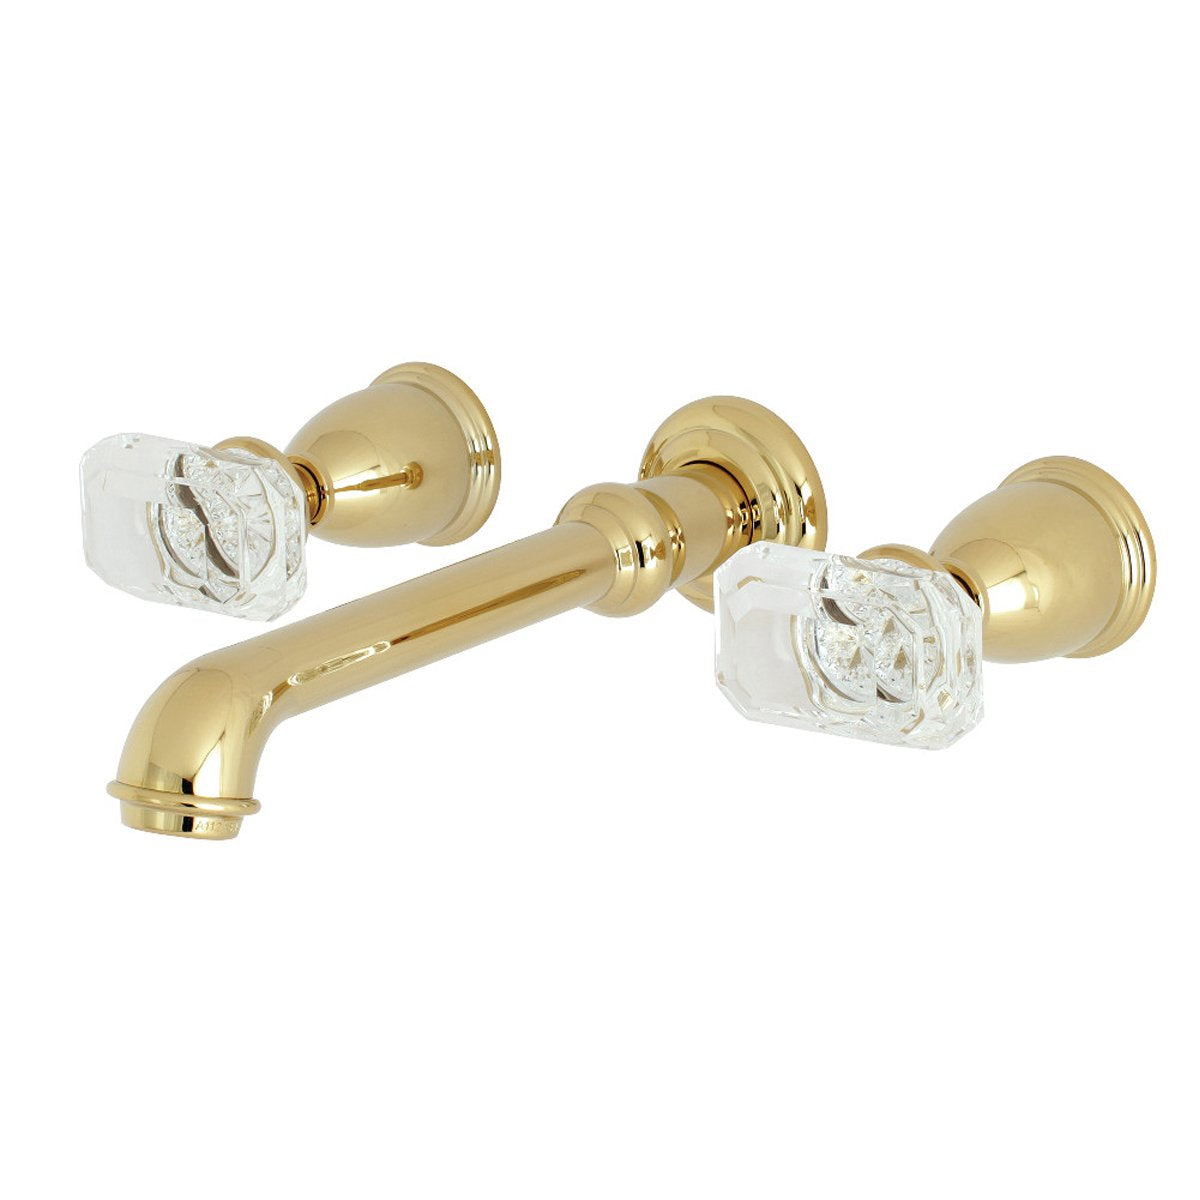 Kingston Brass Krystal Onyx Two-Handle Wall Mount Bathroom Faucet